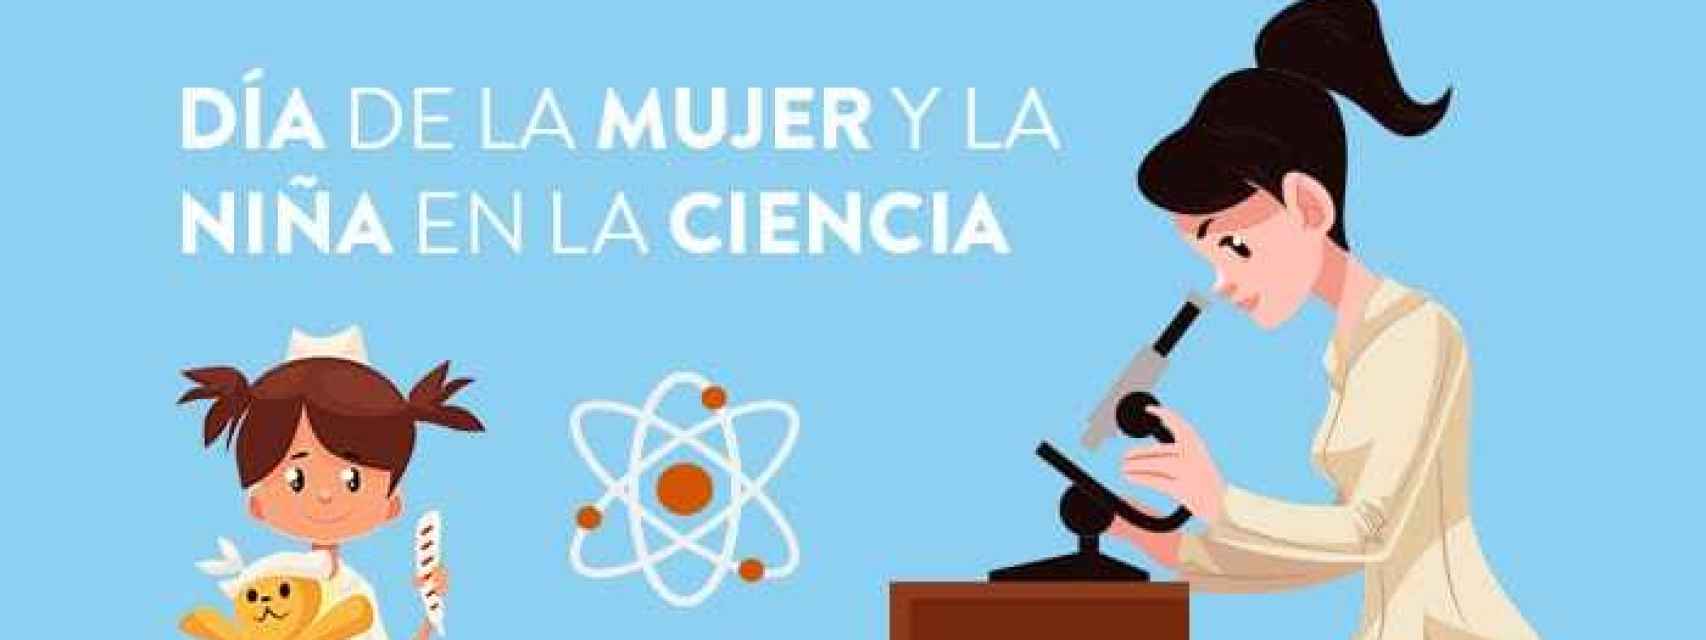 Imagen promocional del Dia de la Mujer y la Niña en la Ciencia